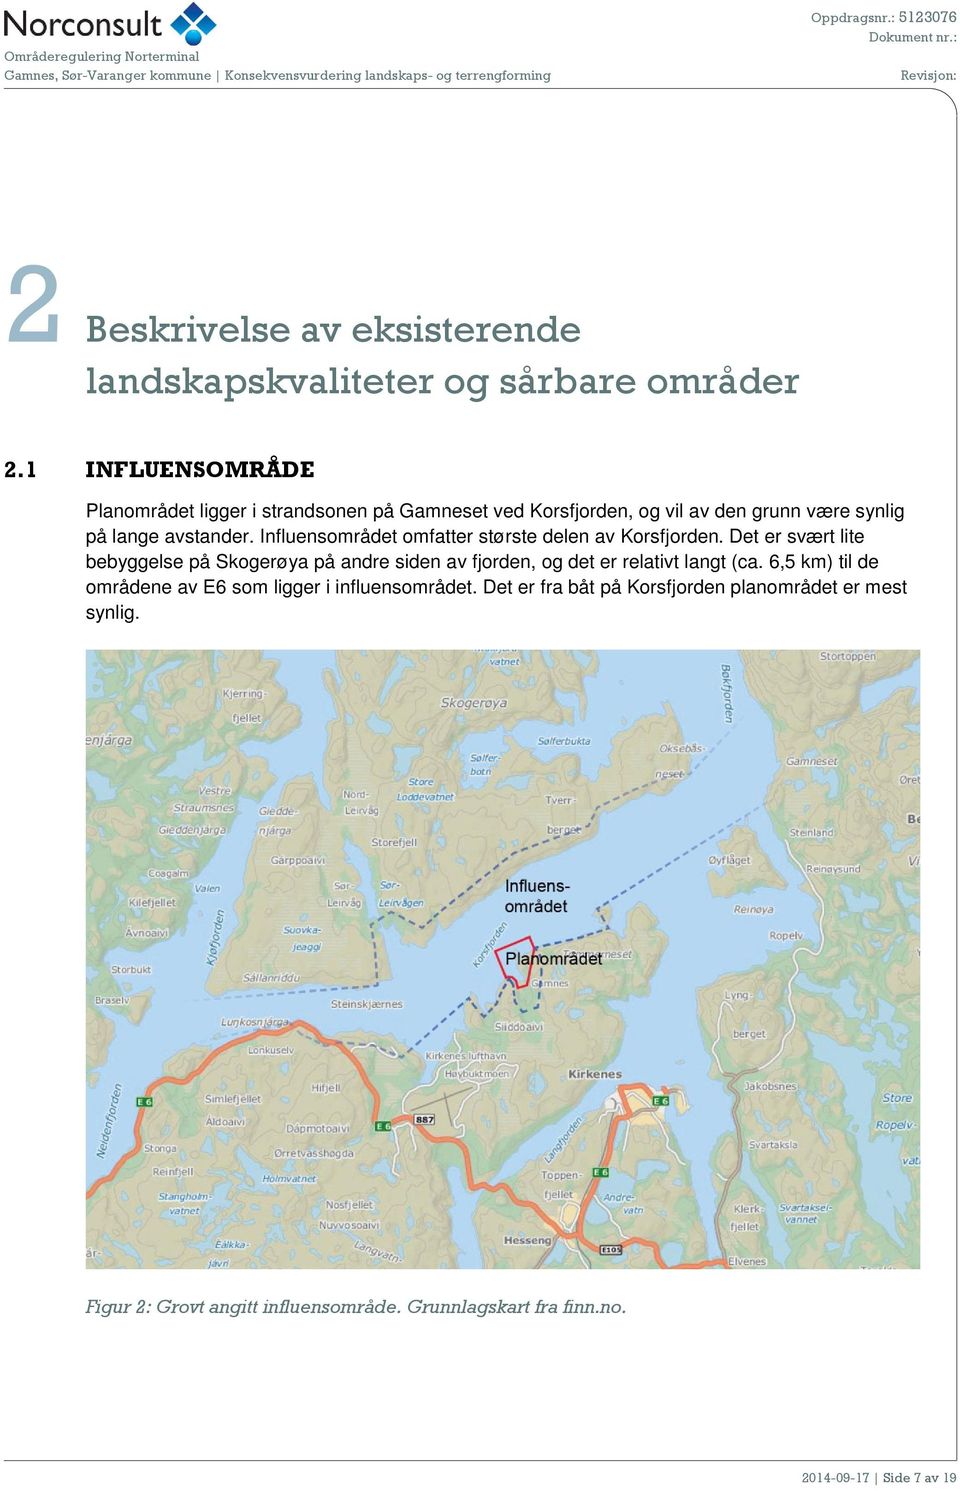 Influensområdet omfatter største delen av Korsfjorden.